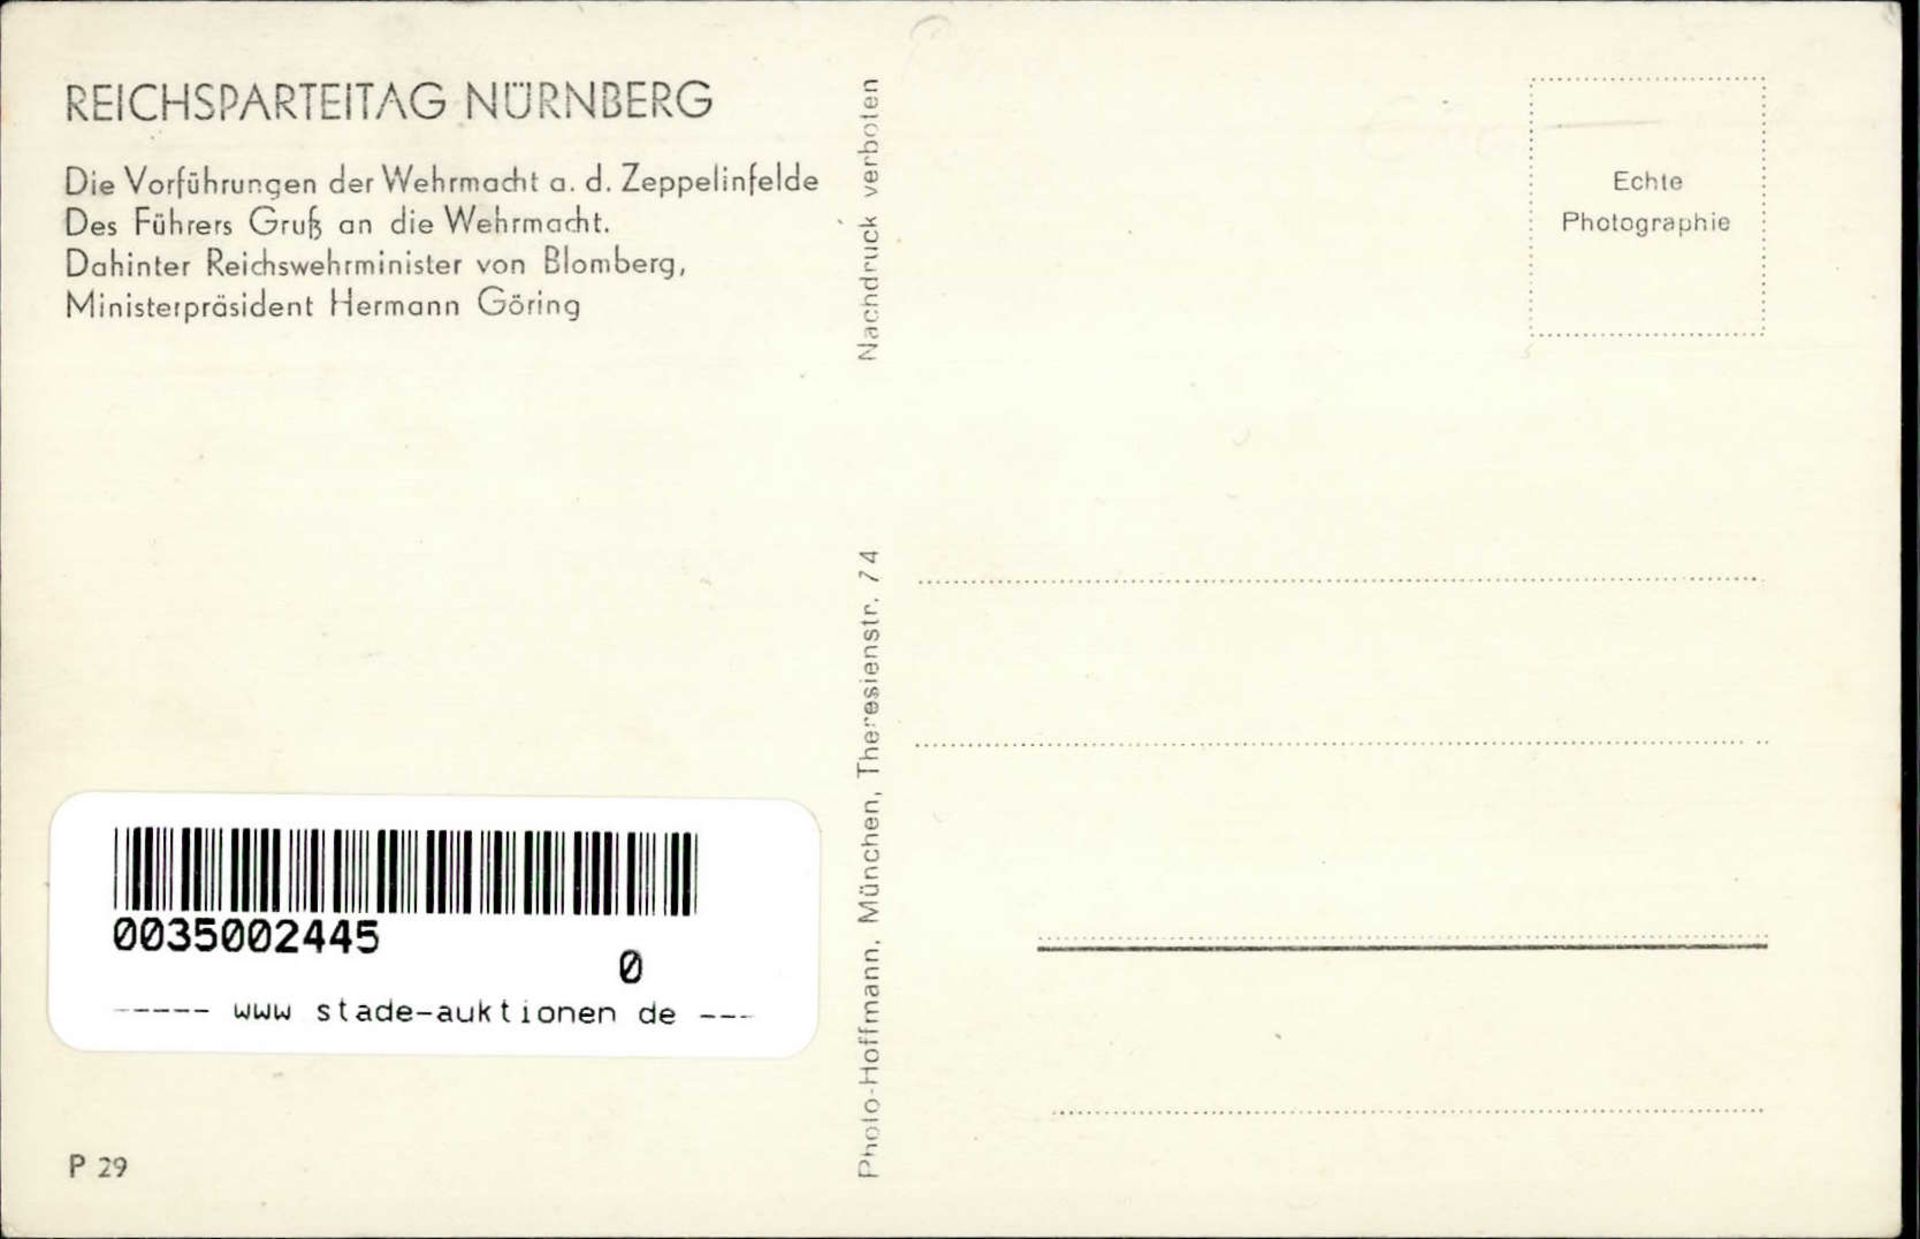 REICHSPARTEITAG NÜRNBERG WK II - PH P 29 Führers Gruß an die Wehrmacht mit Blomberg und Göring I - Image 2 of 2